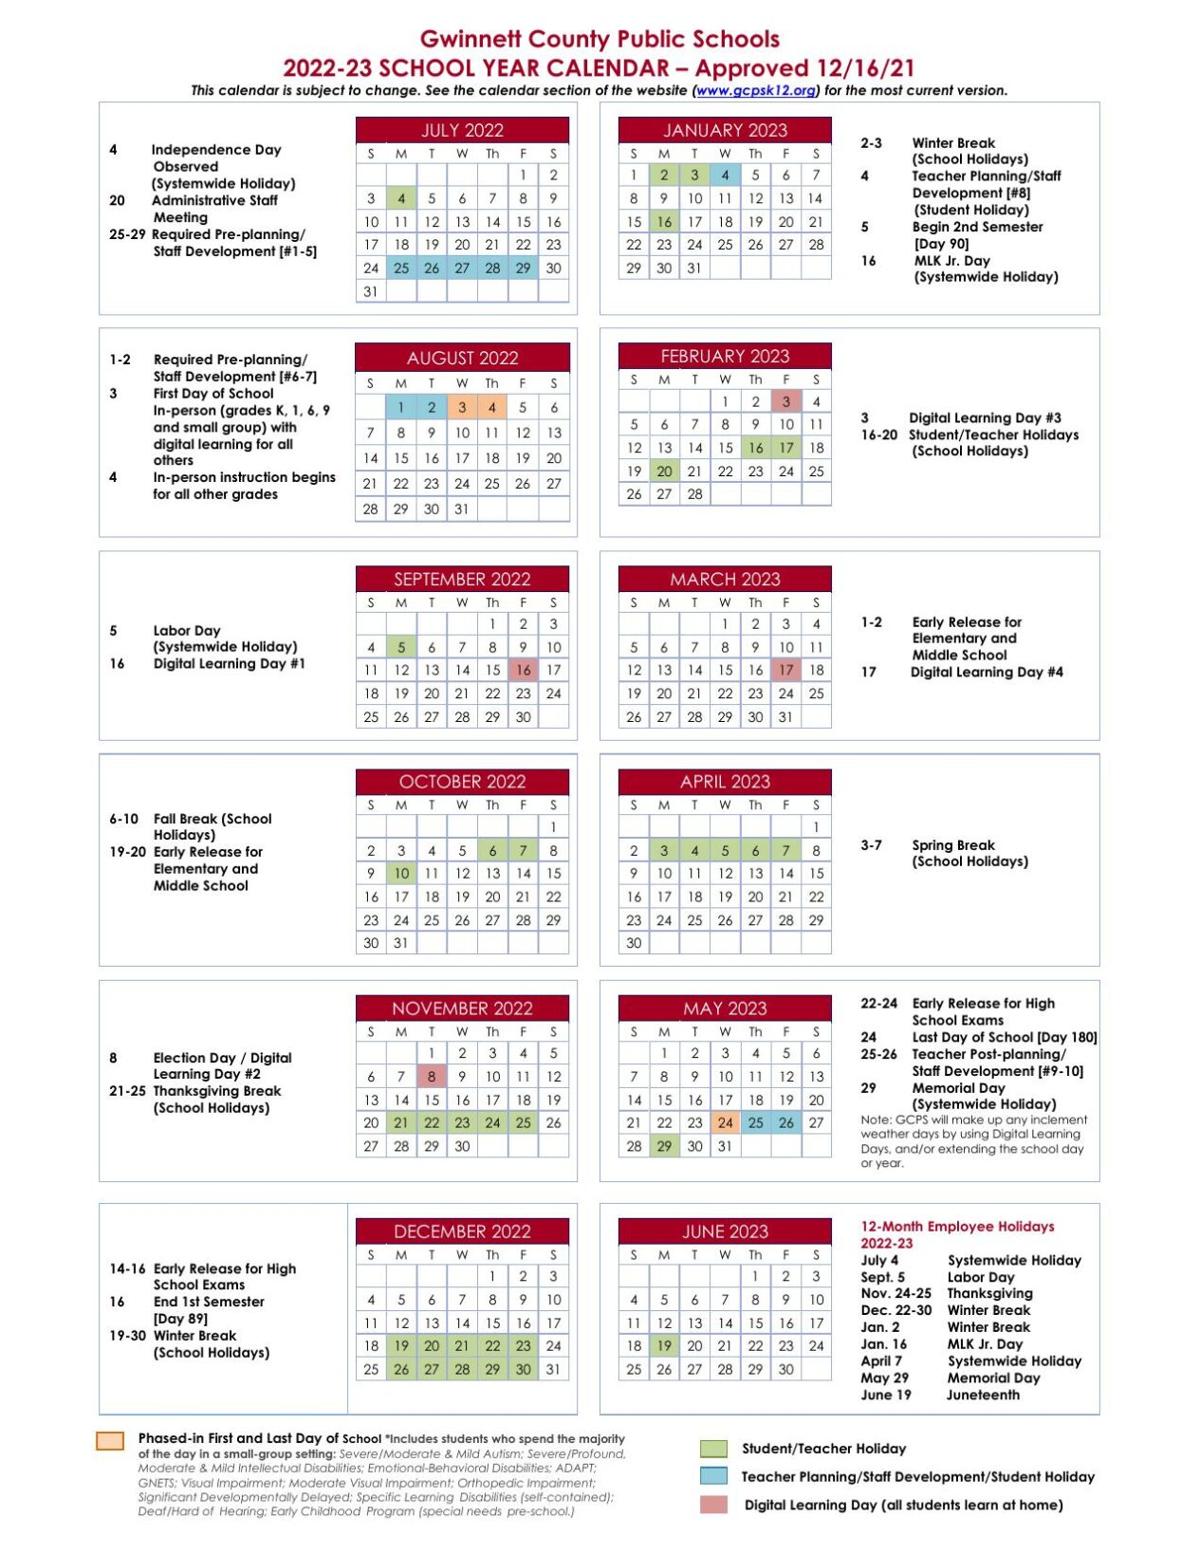 School Calendar 2023 2024 Get Calendar 2023 Update